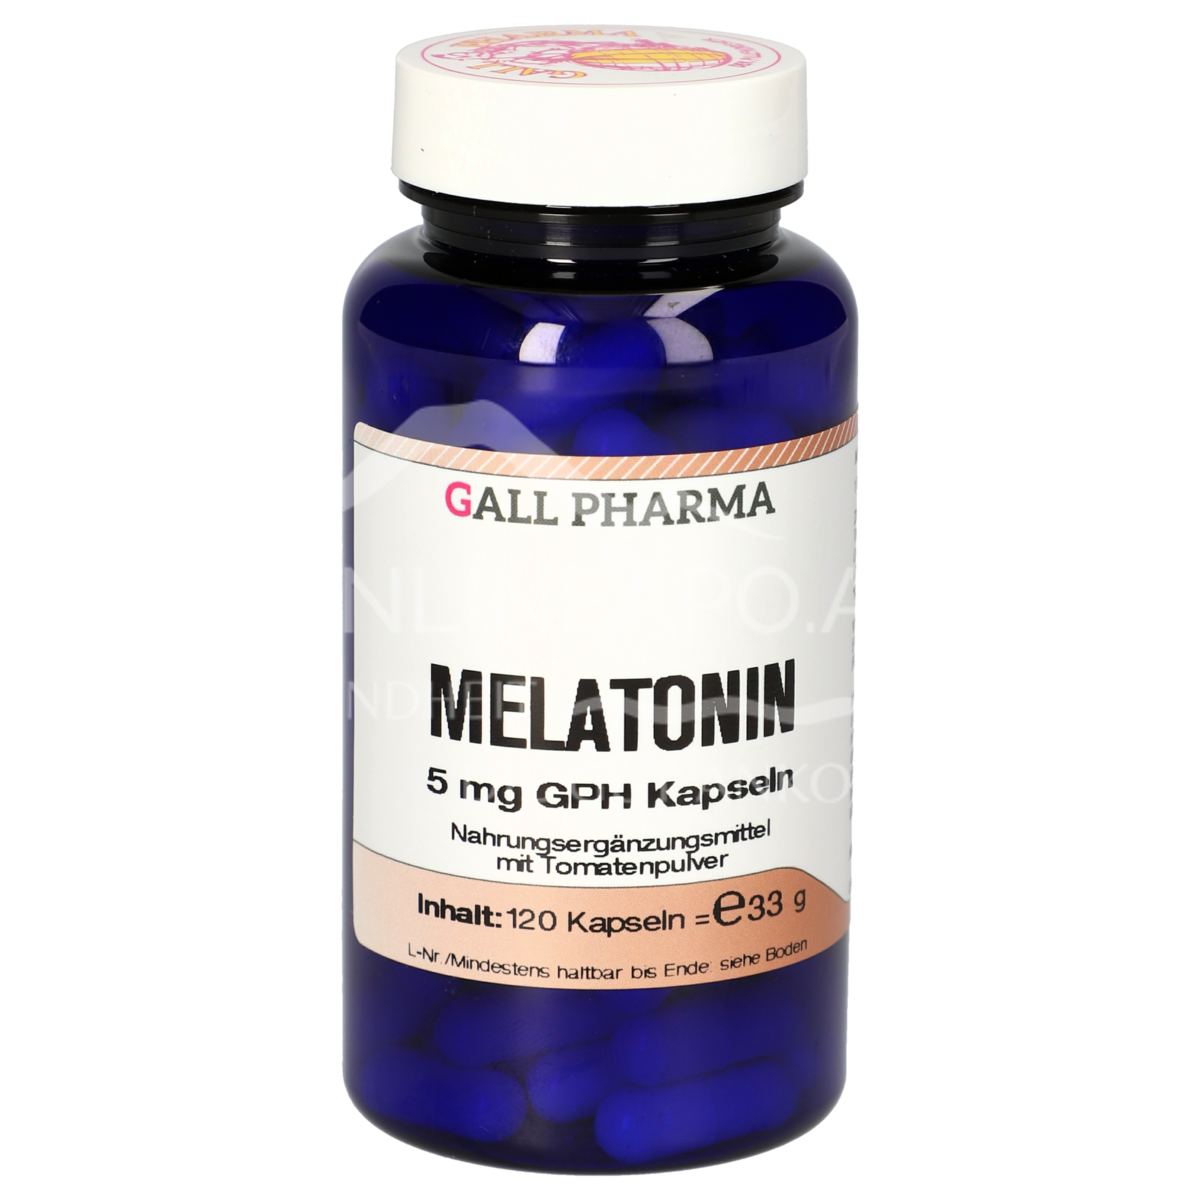 Gall Pharma Melatonin 5 mg Kapseln